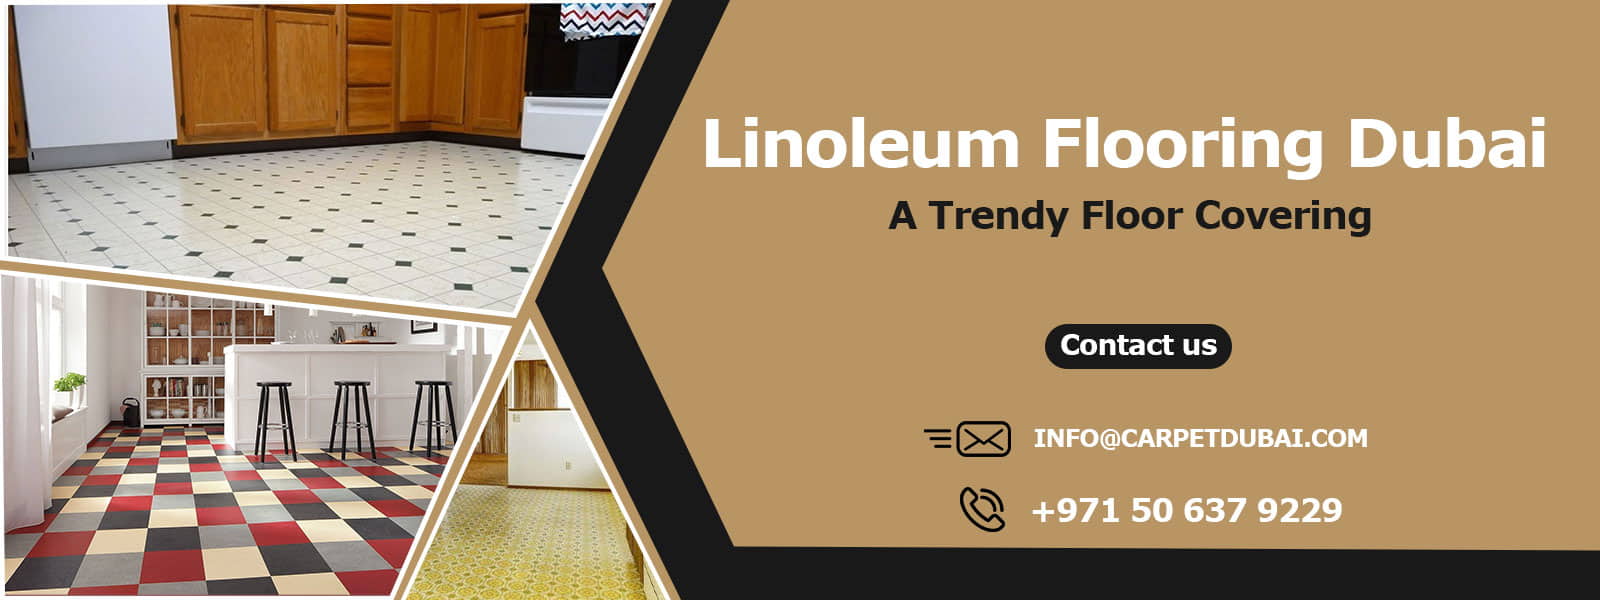 Linoleum-Flooring-Dubai banner